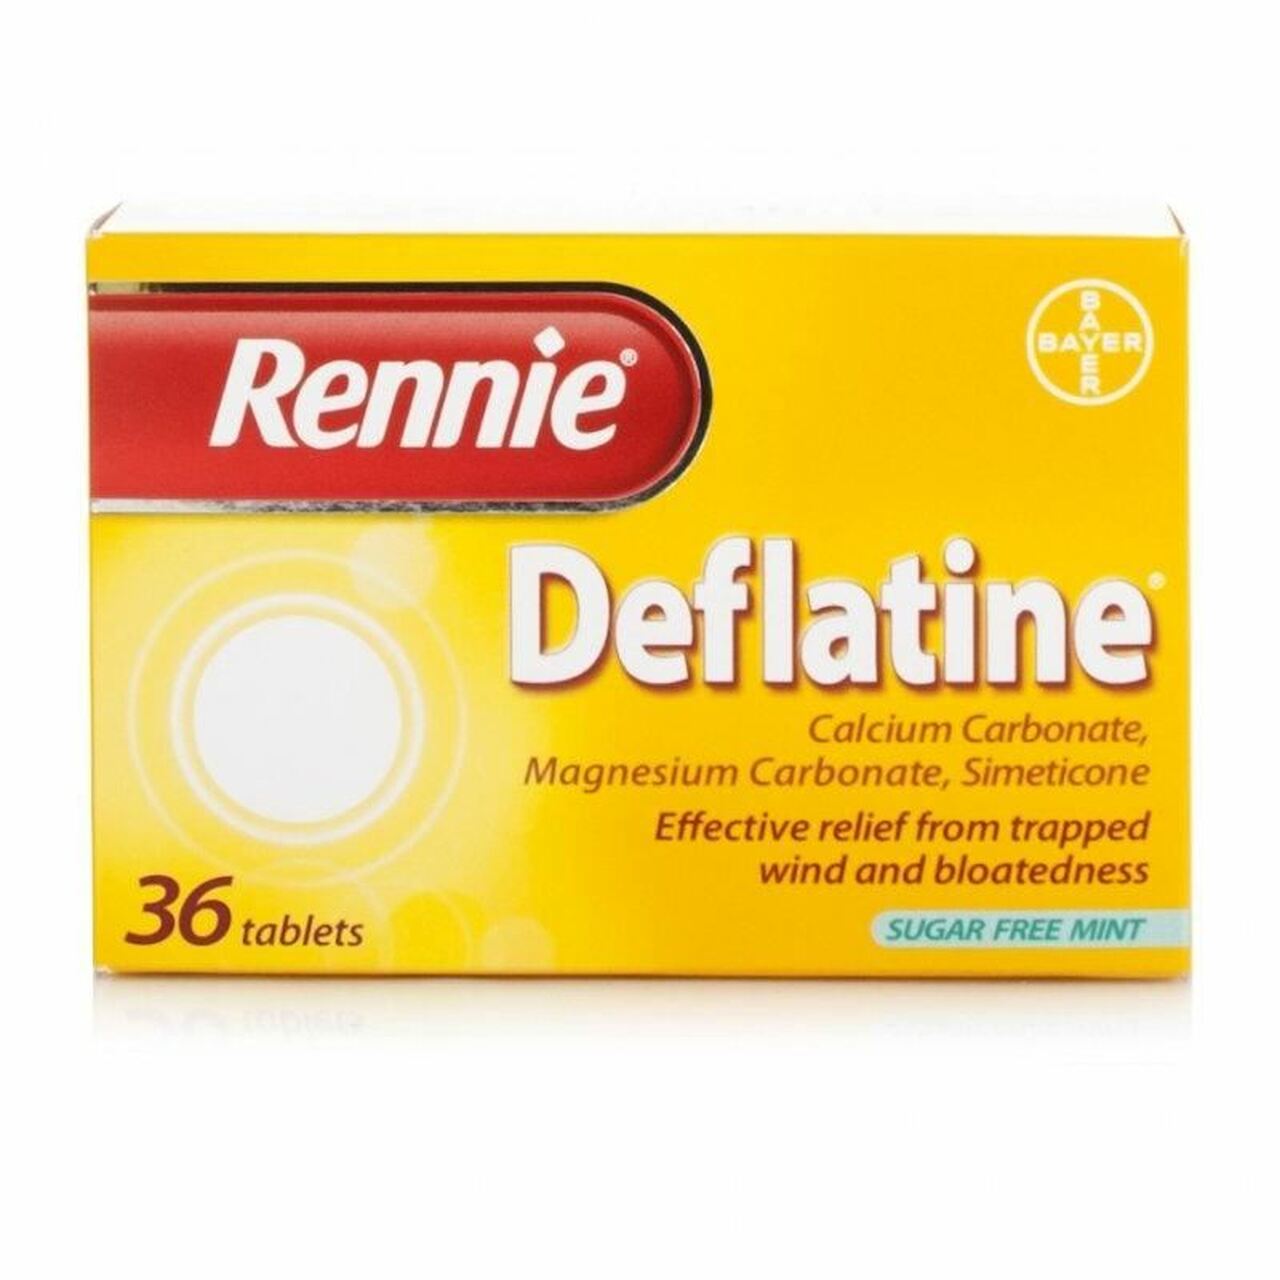 Rennie Deflatine Relief 36 tablets